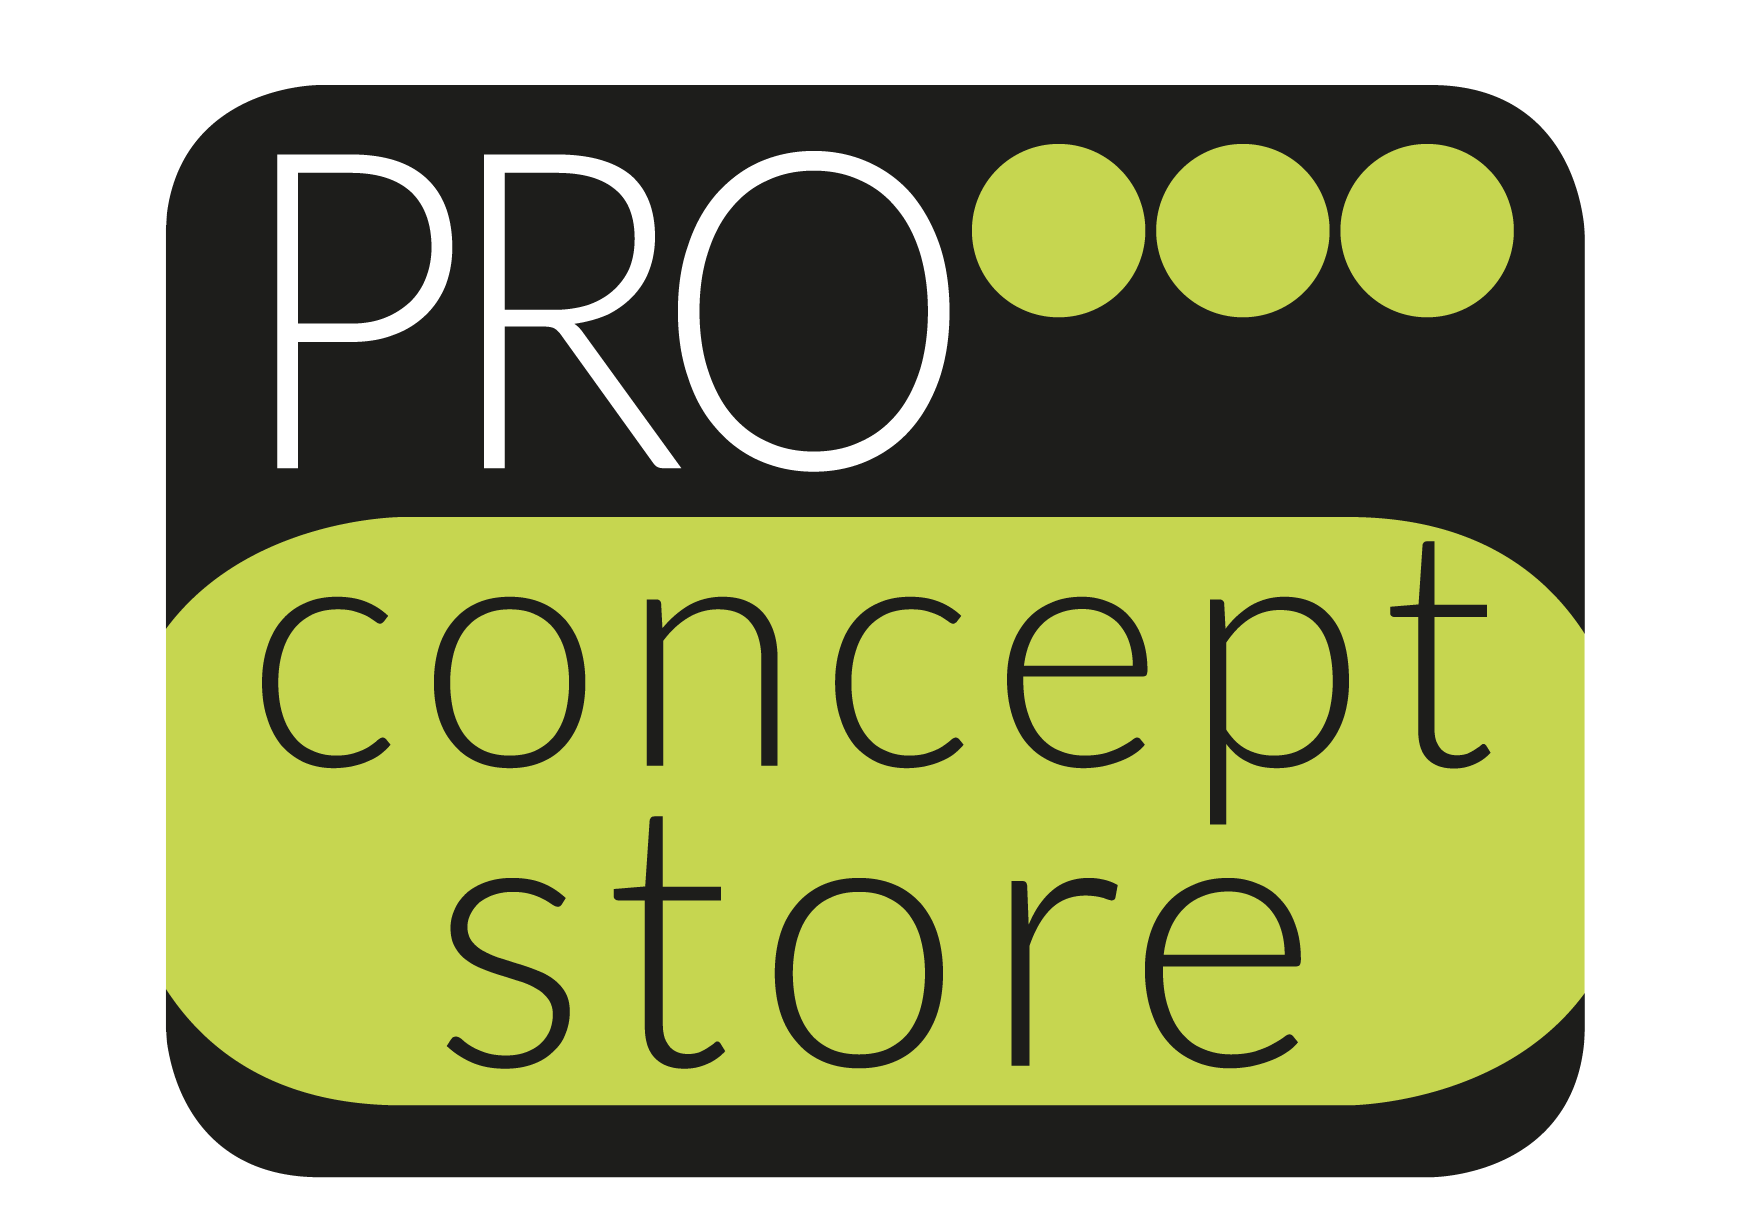 Pro Concept Store